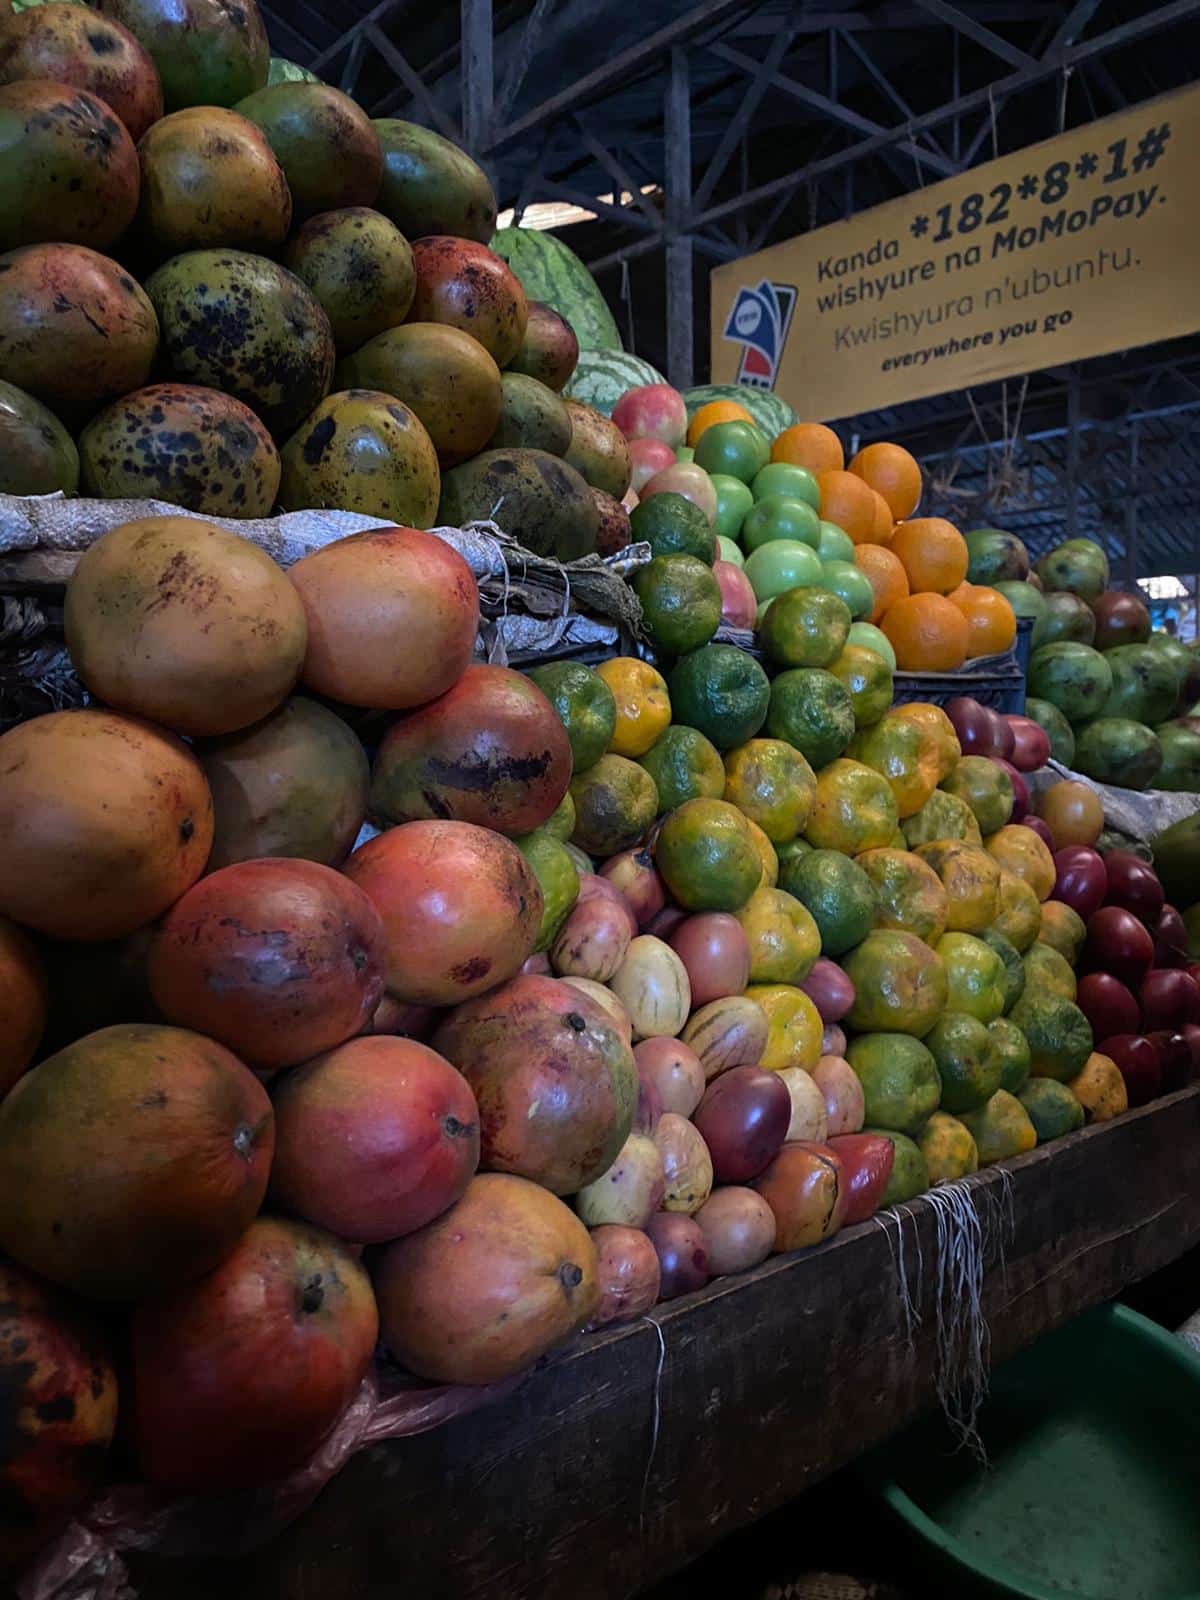 Kimironko market bij het fruit